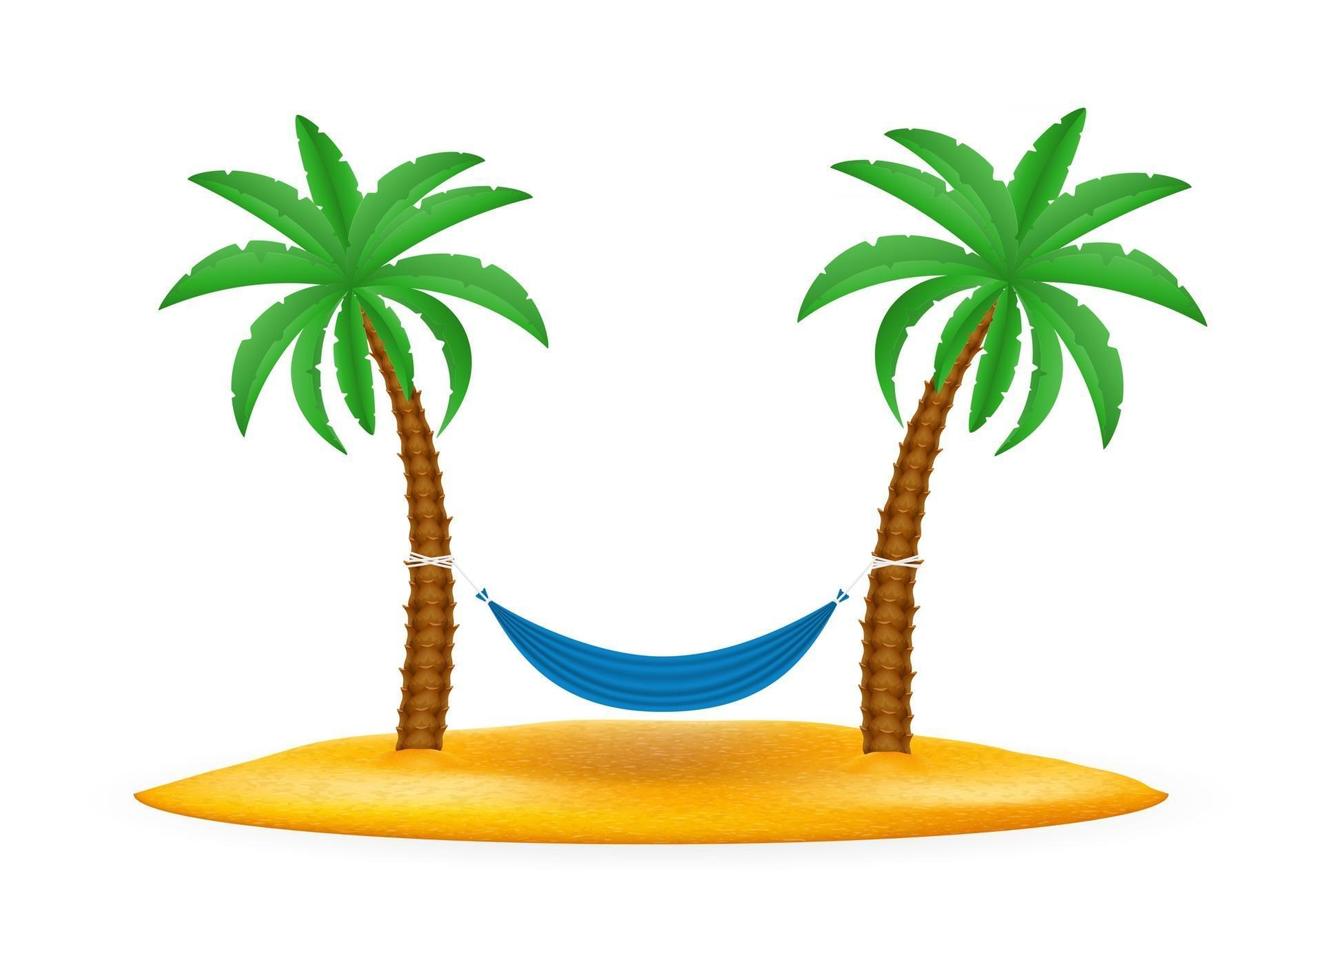 palmboom en accessoires voor rest voorraad vectorillustratie geïsoleerd op een witte achtergrond vector